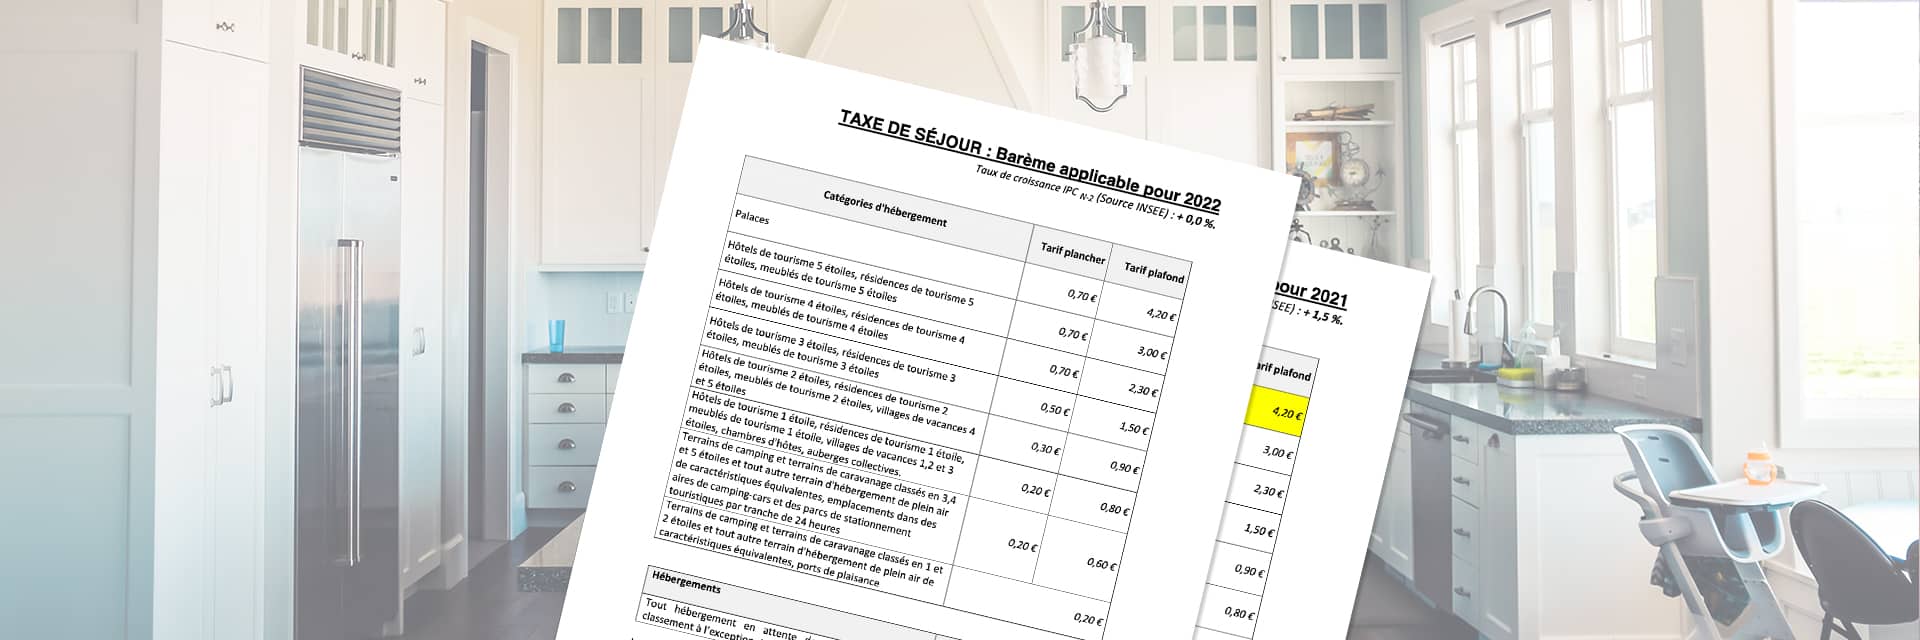 Barème des tarifs de taxe de séjour applicables pour 2022